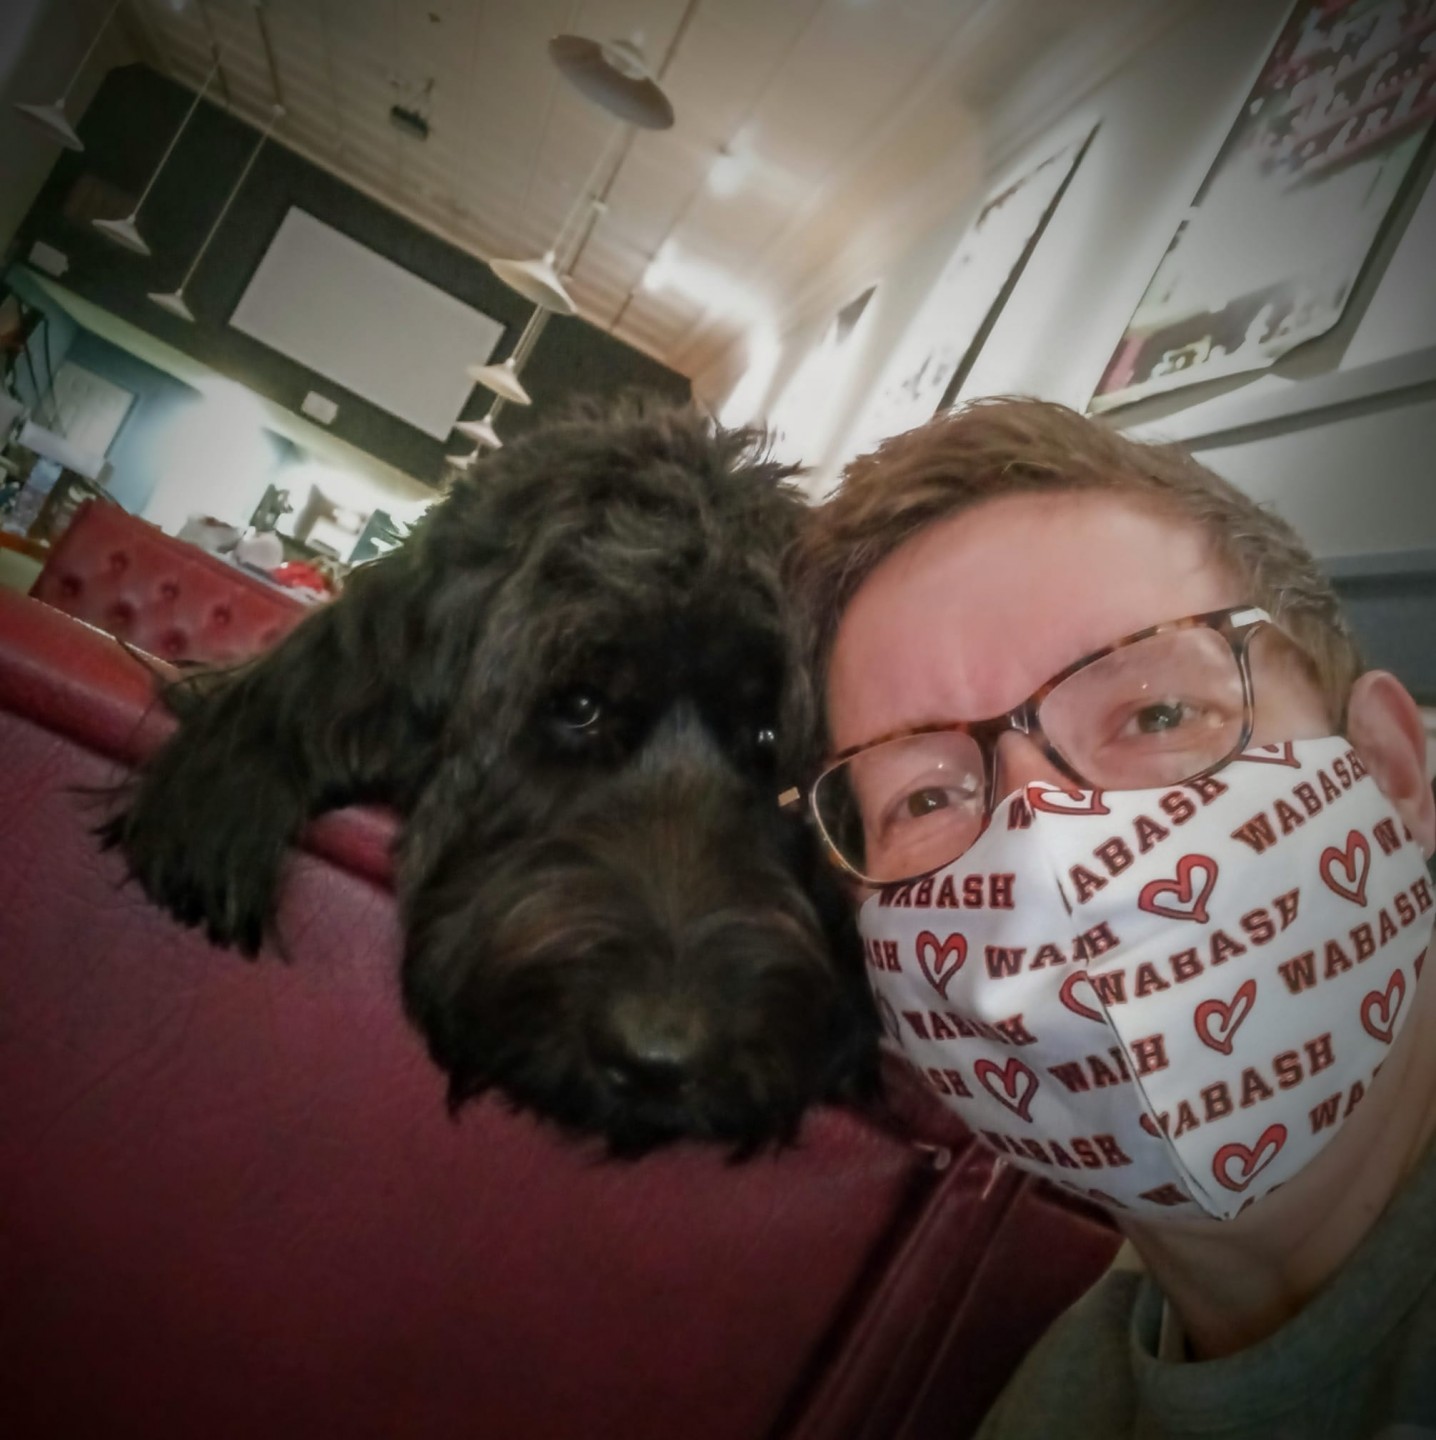 A masked survivor and her fluffy dog